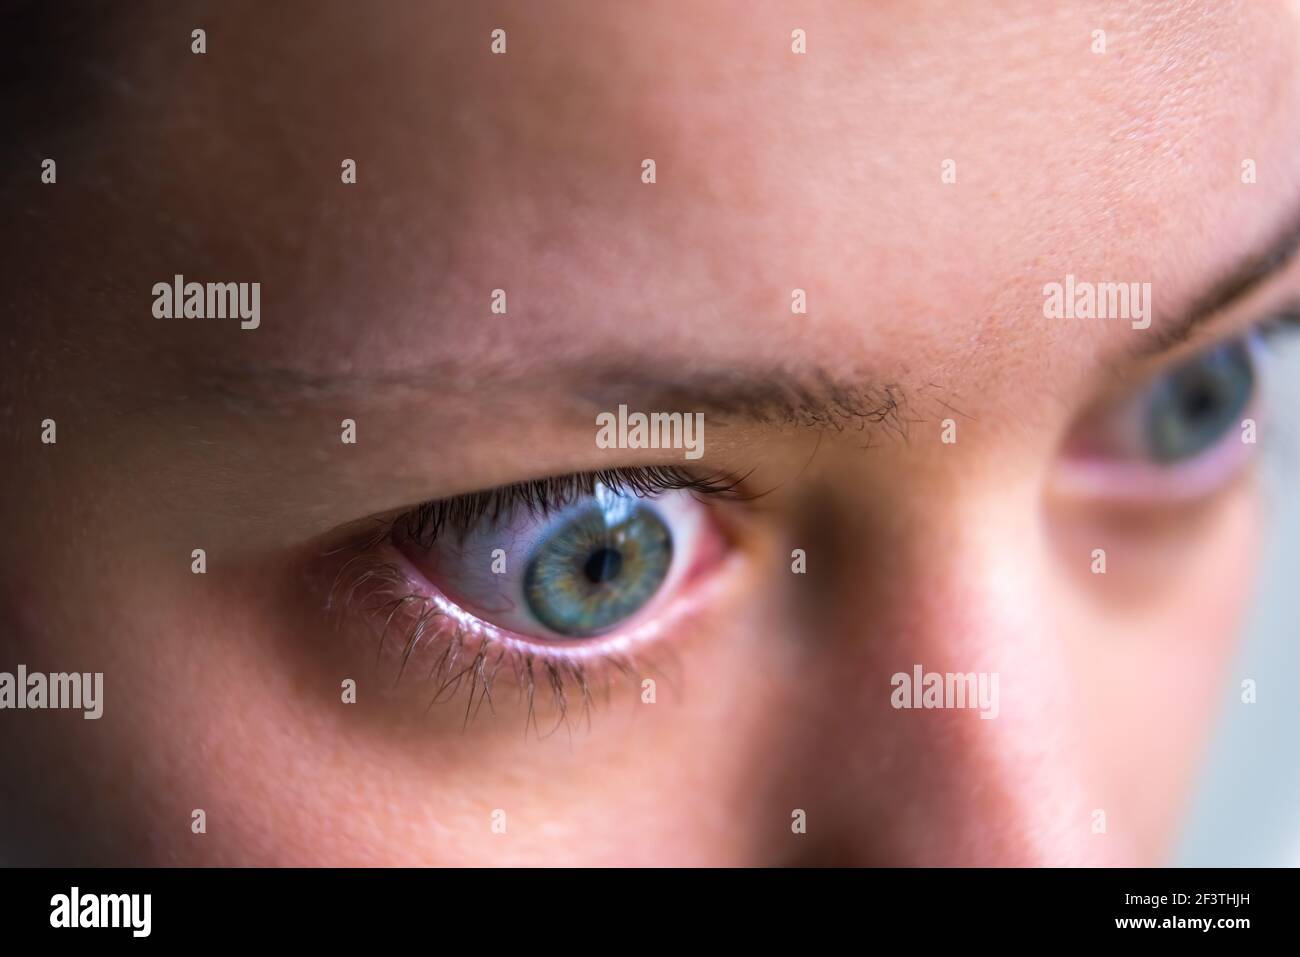 Macro gros plan profil portrait de la jeune femme visage avec tombe maladie hyperthyroïdie symptômes de l'ophtalmopathie gonflement des yeux et de la proptose œdème Banque D'Images